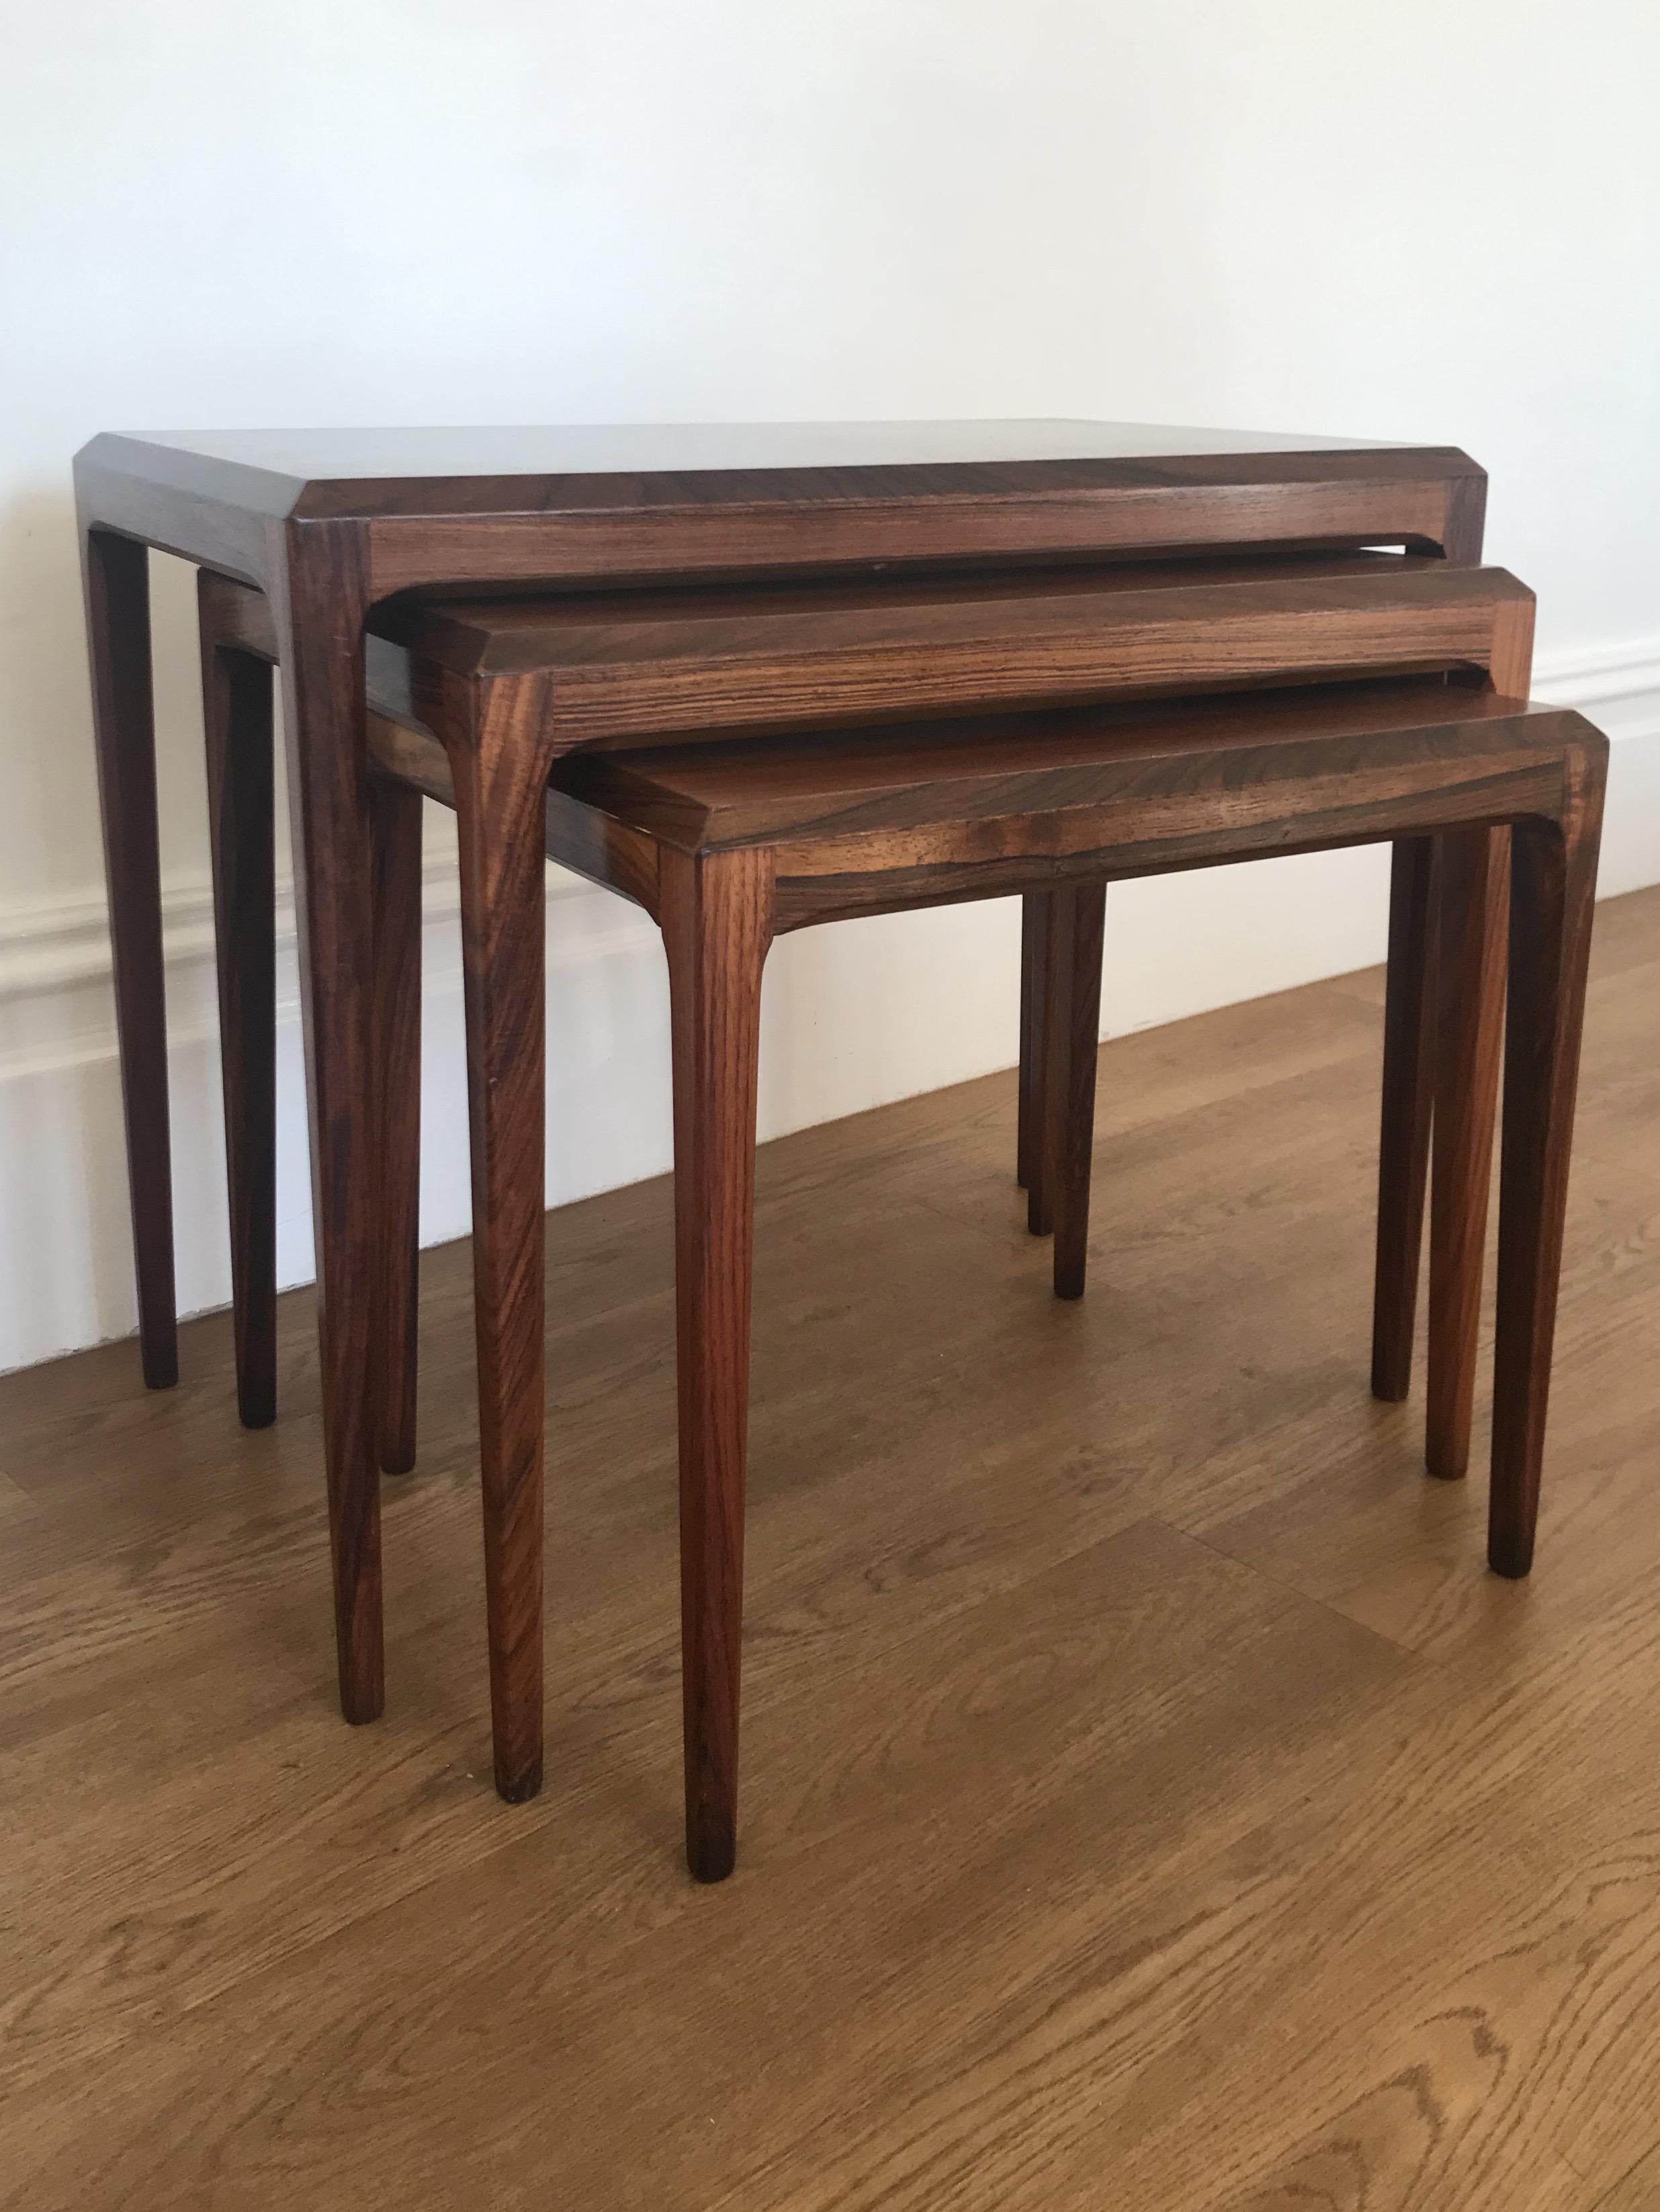 Satz von 3 Tischen aus Palisanderholz, entworfen von Johannes Andersen für CFC Silkeborg, Dänemark.

Die Tische haben verjüngte achteckige Beine mit abgeschrägten Platten und einer schönen, durchgehenden Palisanderholzmaserung.

Die Tische sind in